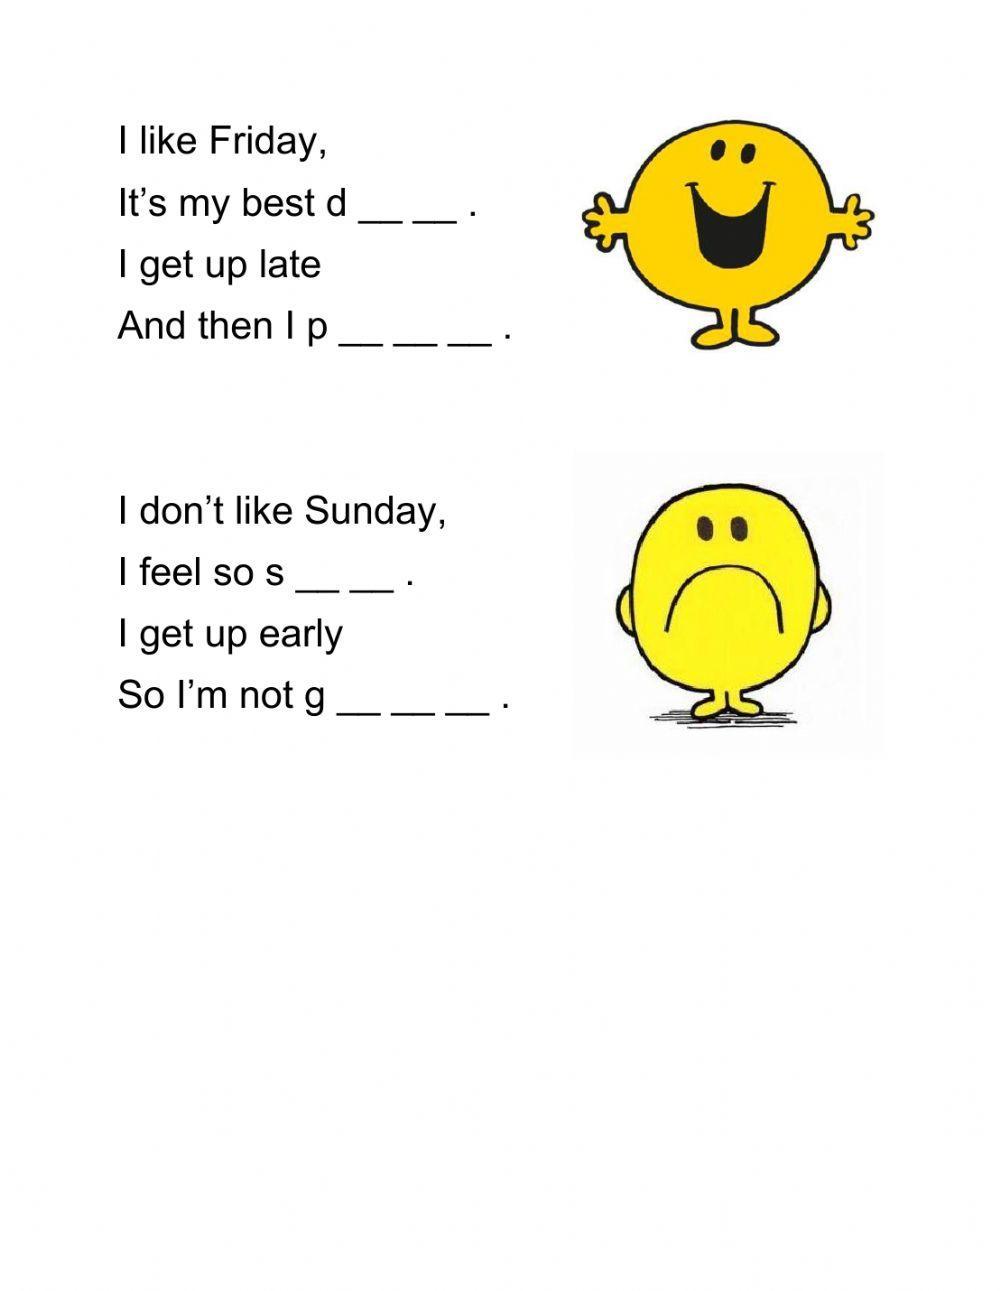 I like Sunday - poem